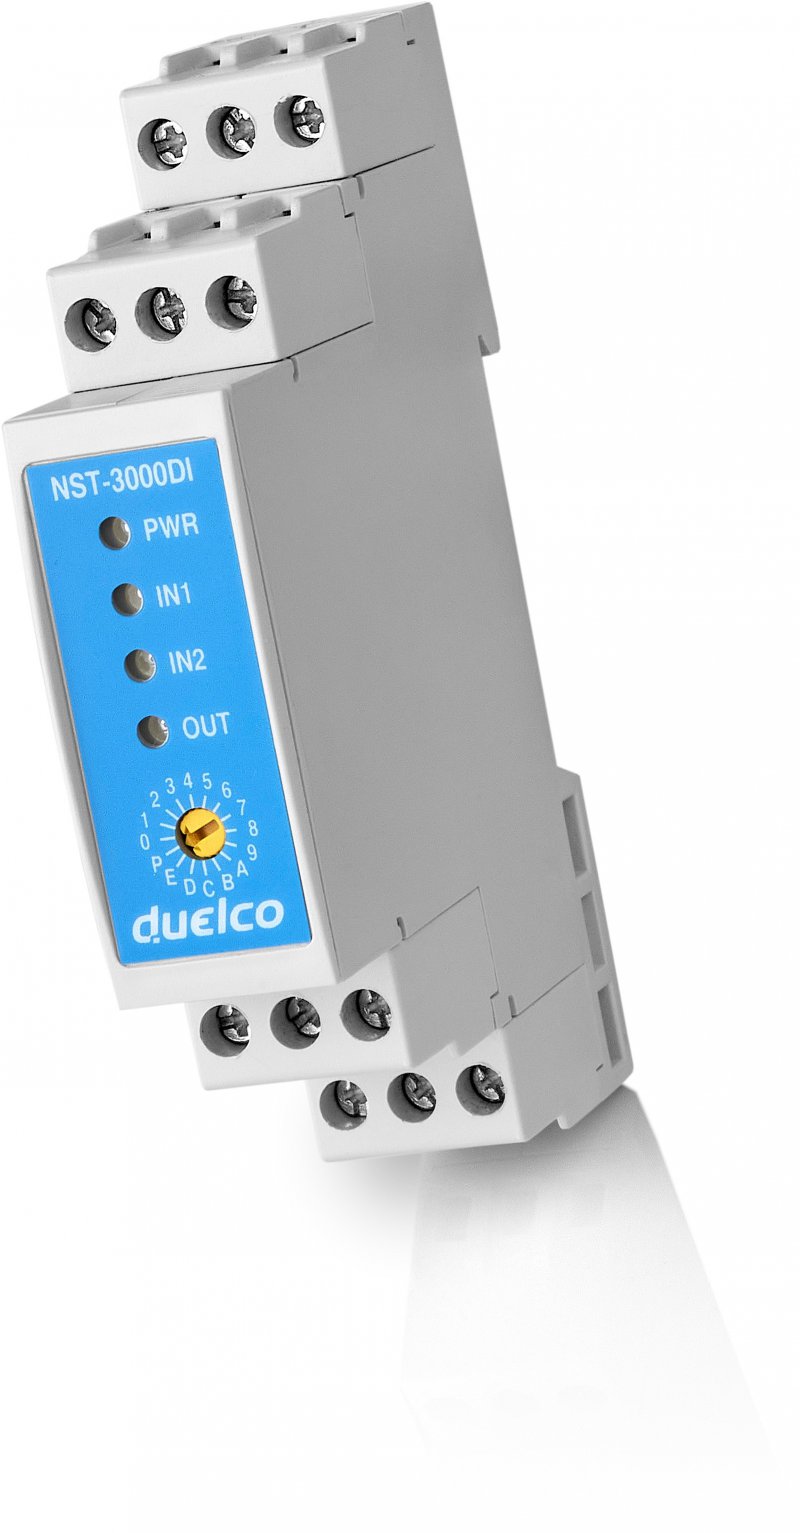 Duelco veiligheidsrelais met vertraagde outputs, ook voor bestaande installaties